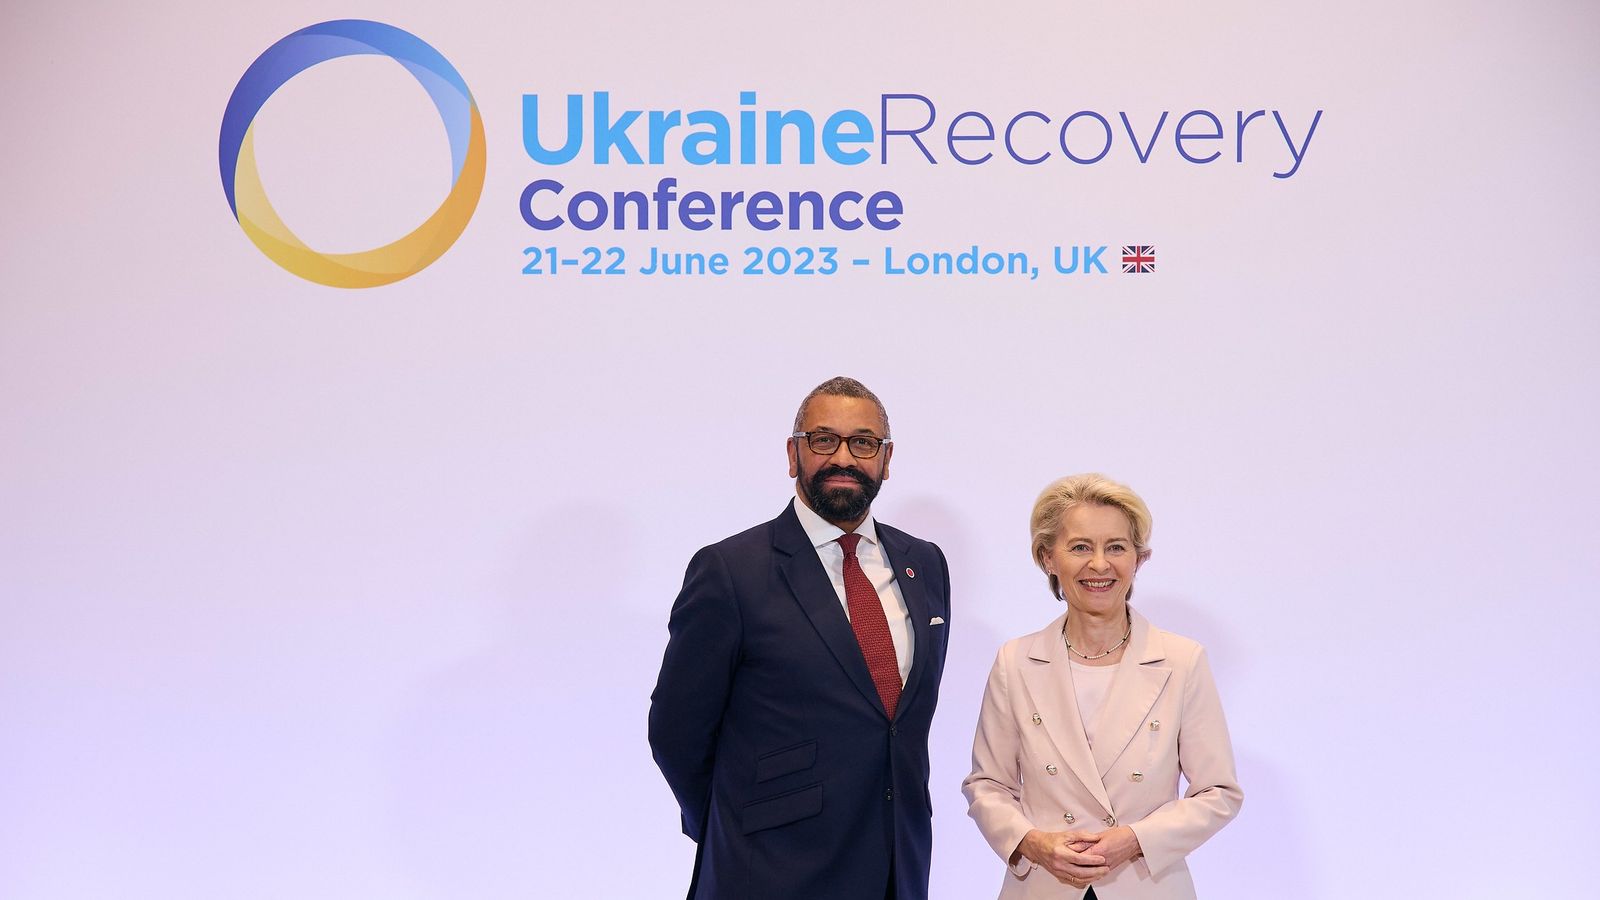 Londýnska konferencia plánuje resuscitovať Ukrajinu pre imperialistické plienenie